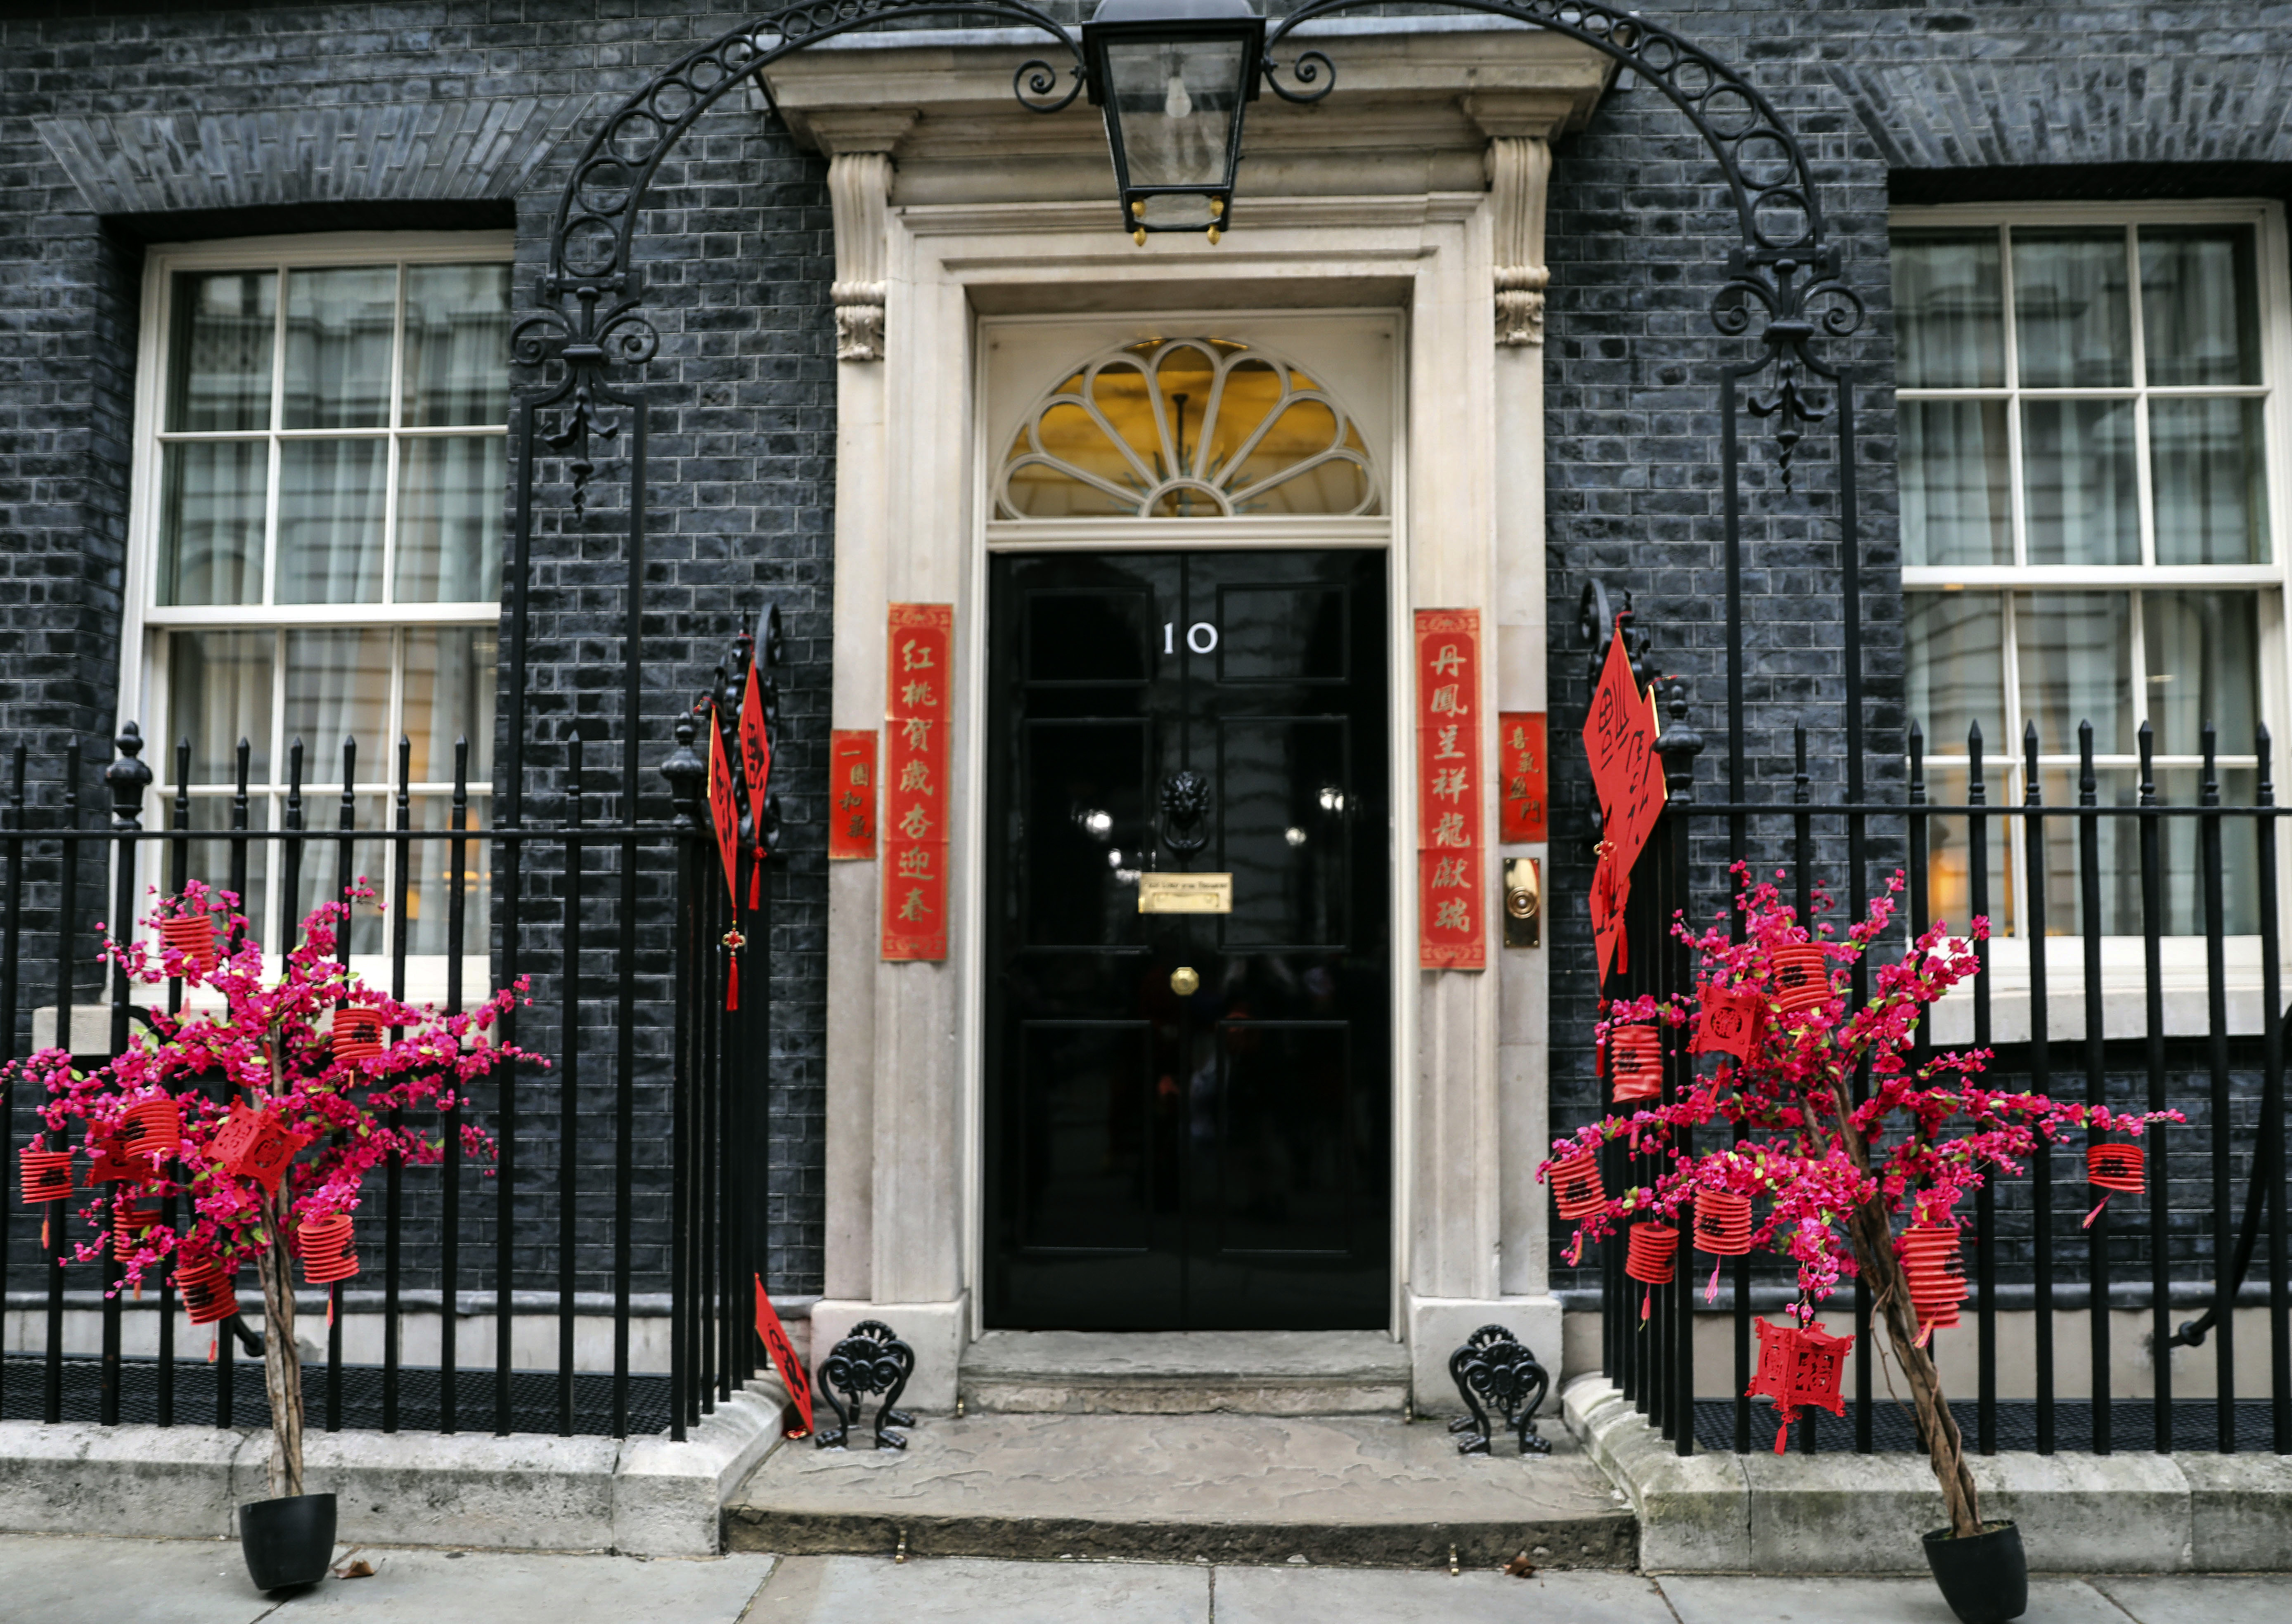 1月31日,在英国伦敦,唐宁街10号首相府门前贴着春联,福字等春节装饰